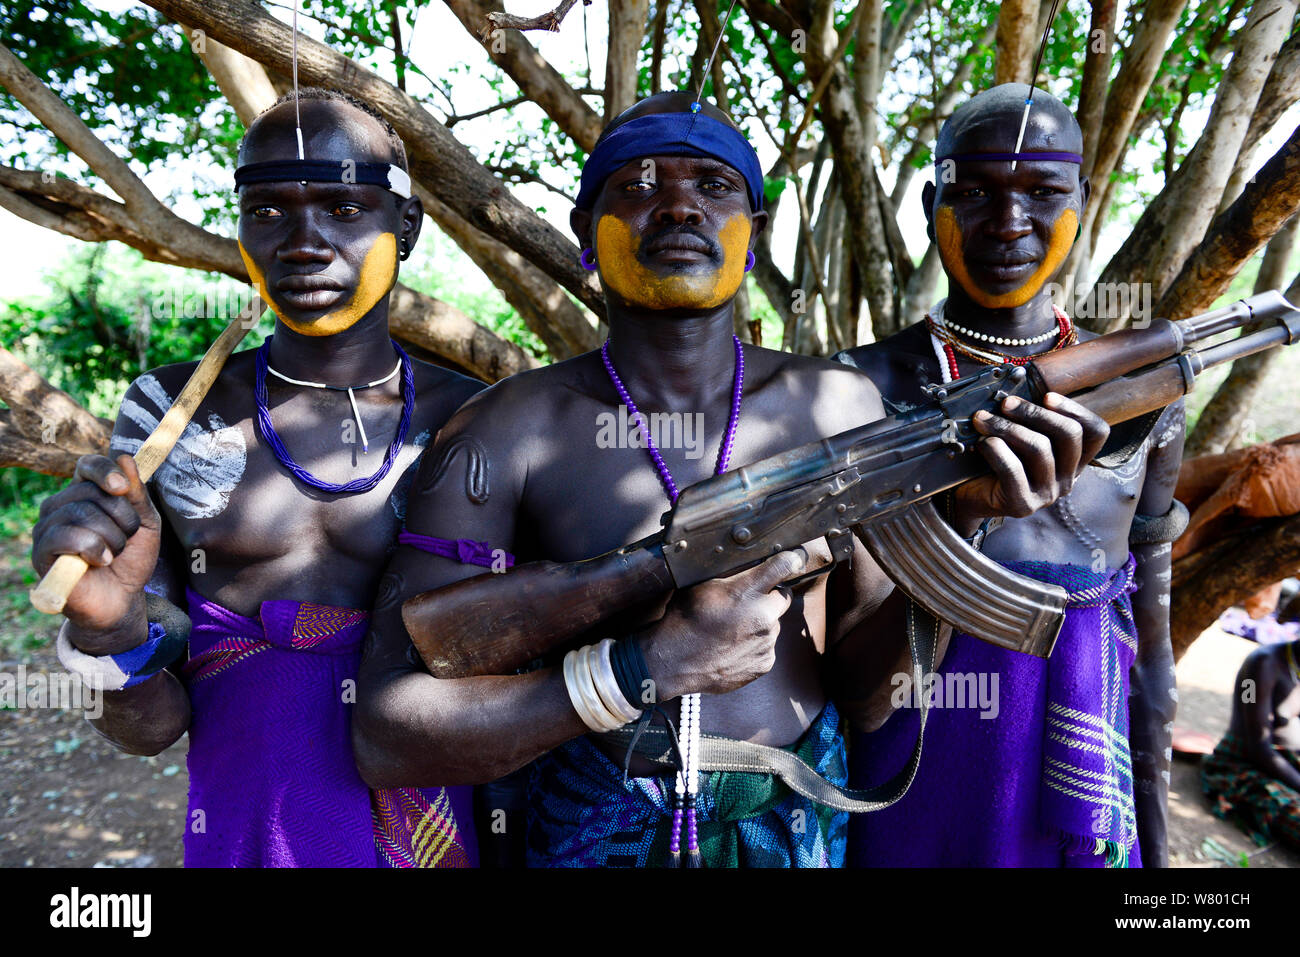 Mursi Dorf, bewaffnete Männer mit traditioneller Kleidung und Schmuck. Mursi Stamm. Mago National Park. Äthiopien, November 2014 Stockfoto